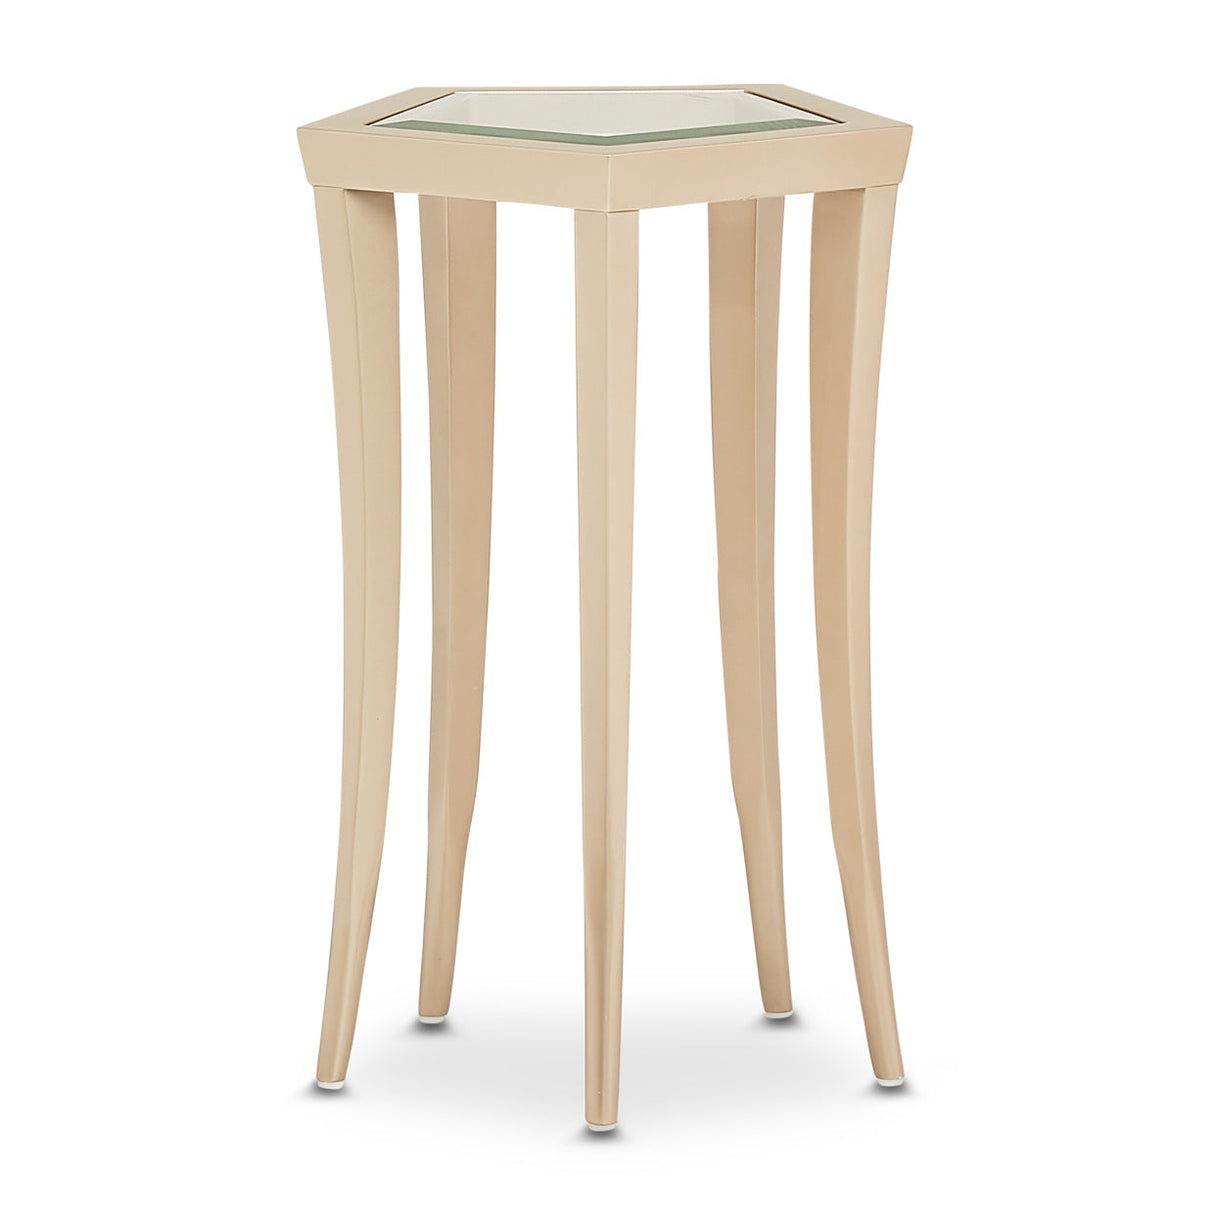 Aico Furniture - La Rachelle Chairside Table In Medium Champagne - 9034225-136